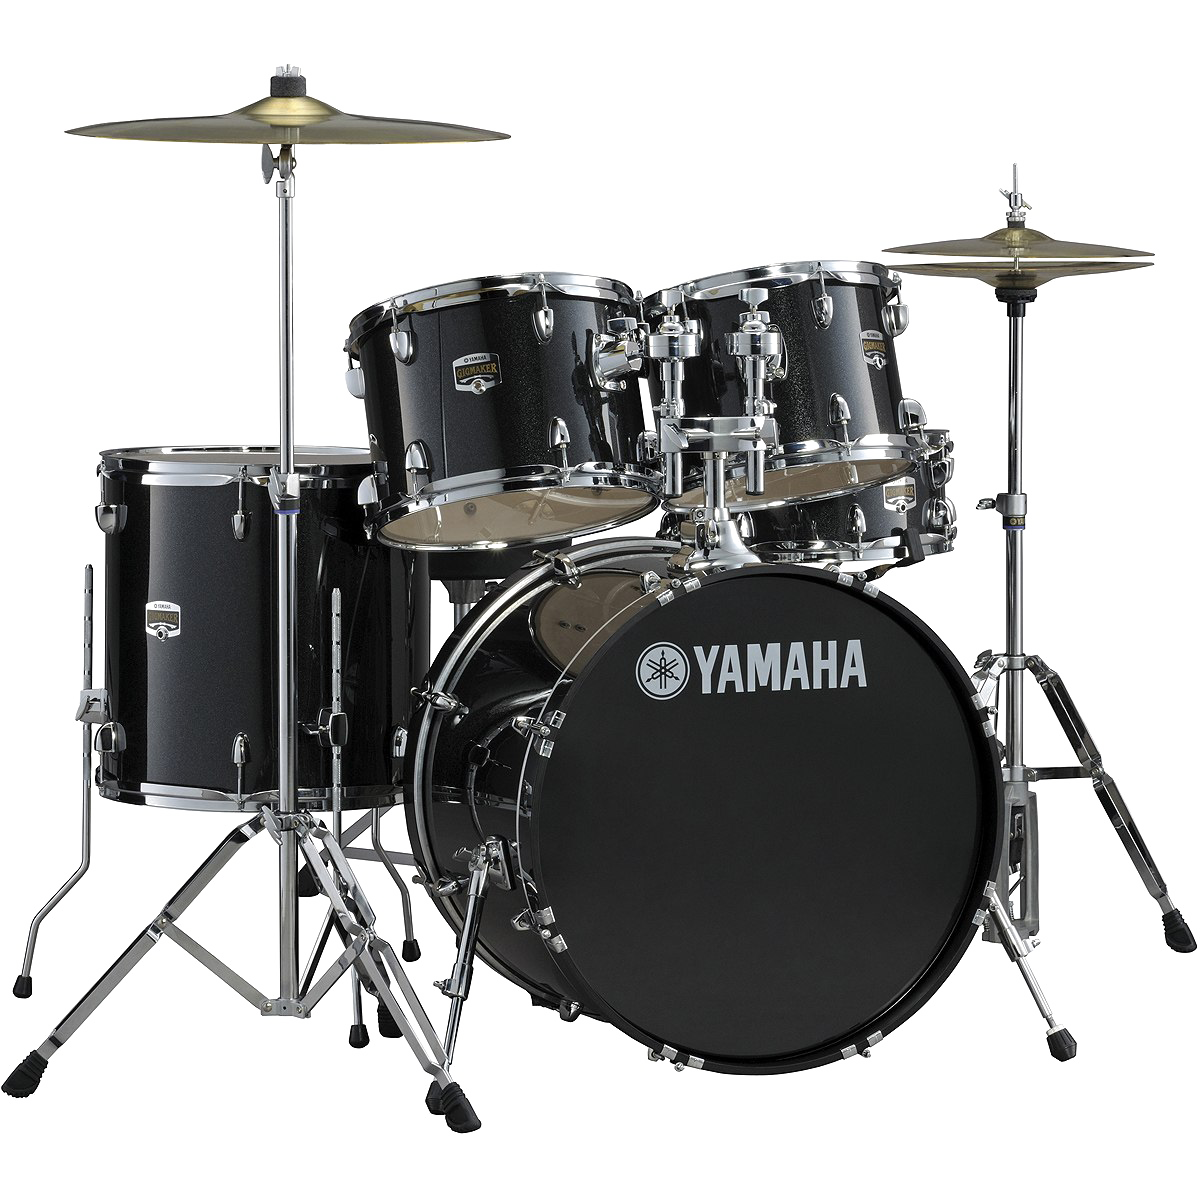 Yamaha Drum Free PNG Image